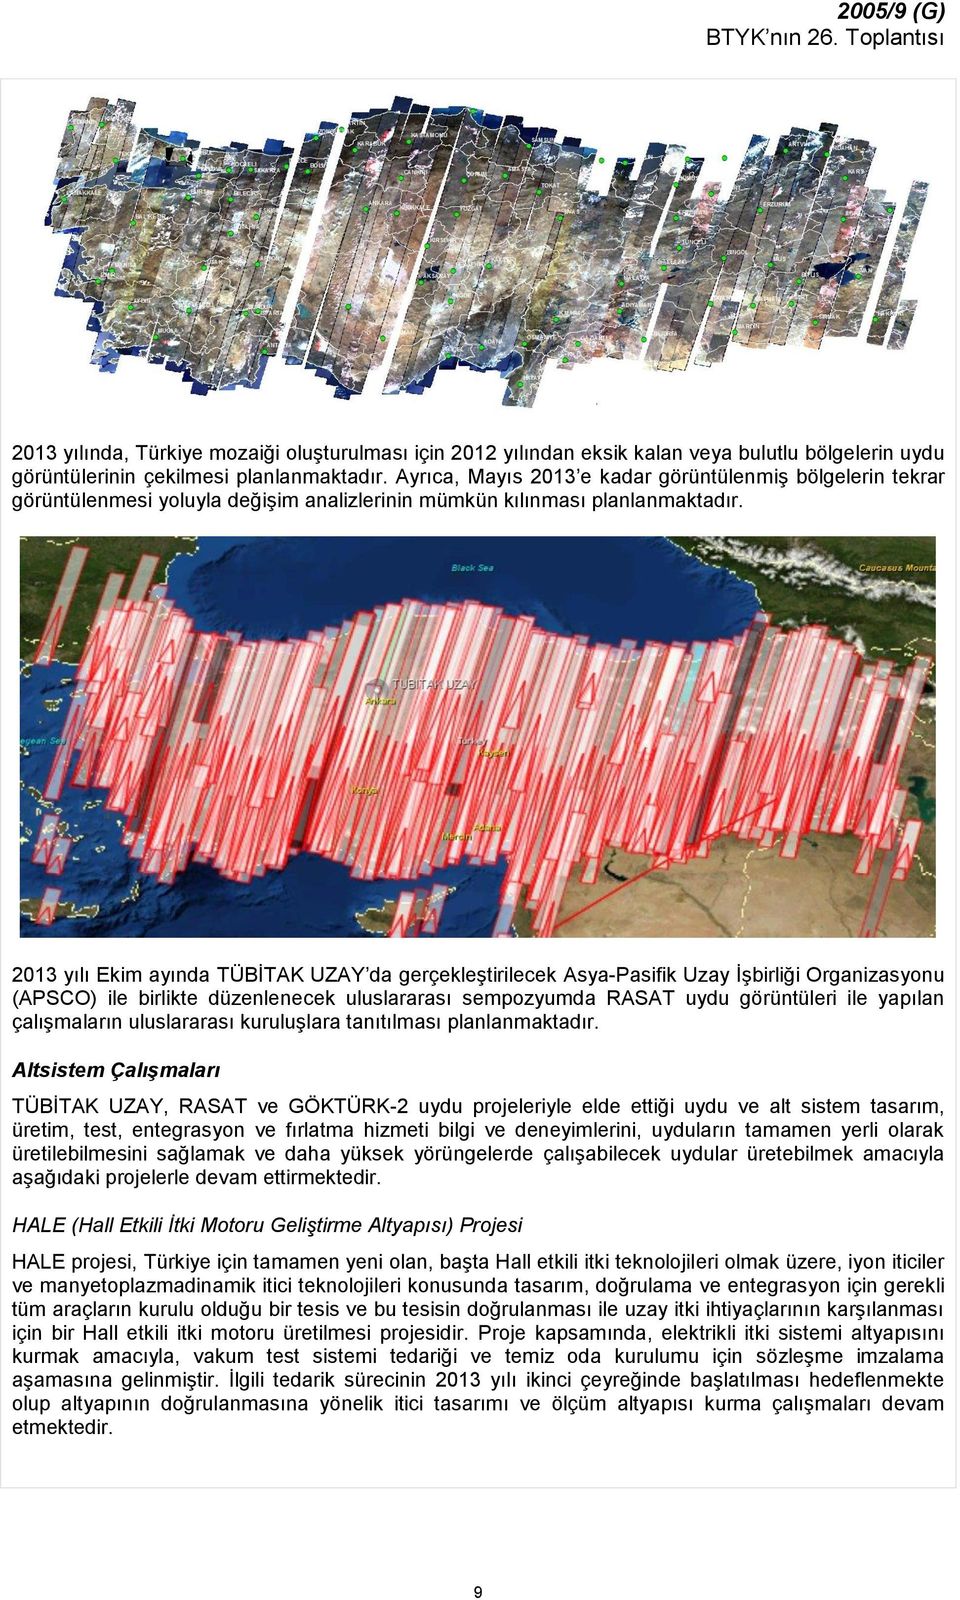 2013 yılı Ekim ayında TÜBİTAK UZAY da gerçekleştirilecek Asya-Pasifik Uzay İşbirliği Organizasyonu (APSCO) ile birlikte düzenlenecek uluslararası sempozyumda RASAT uydu görüntüleri ile yapılan